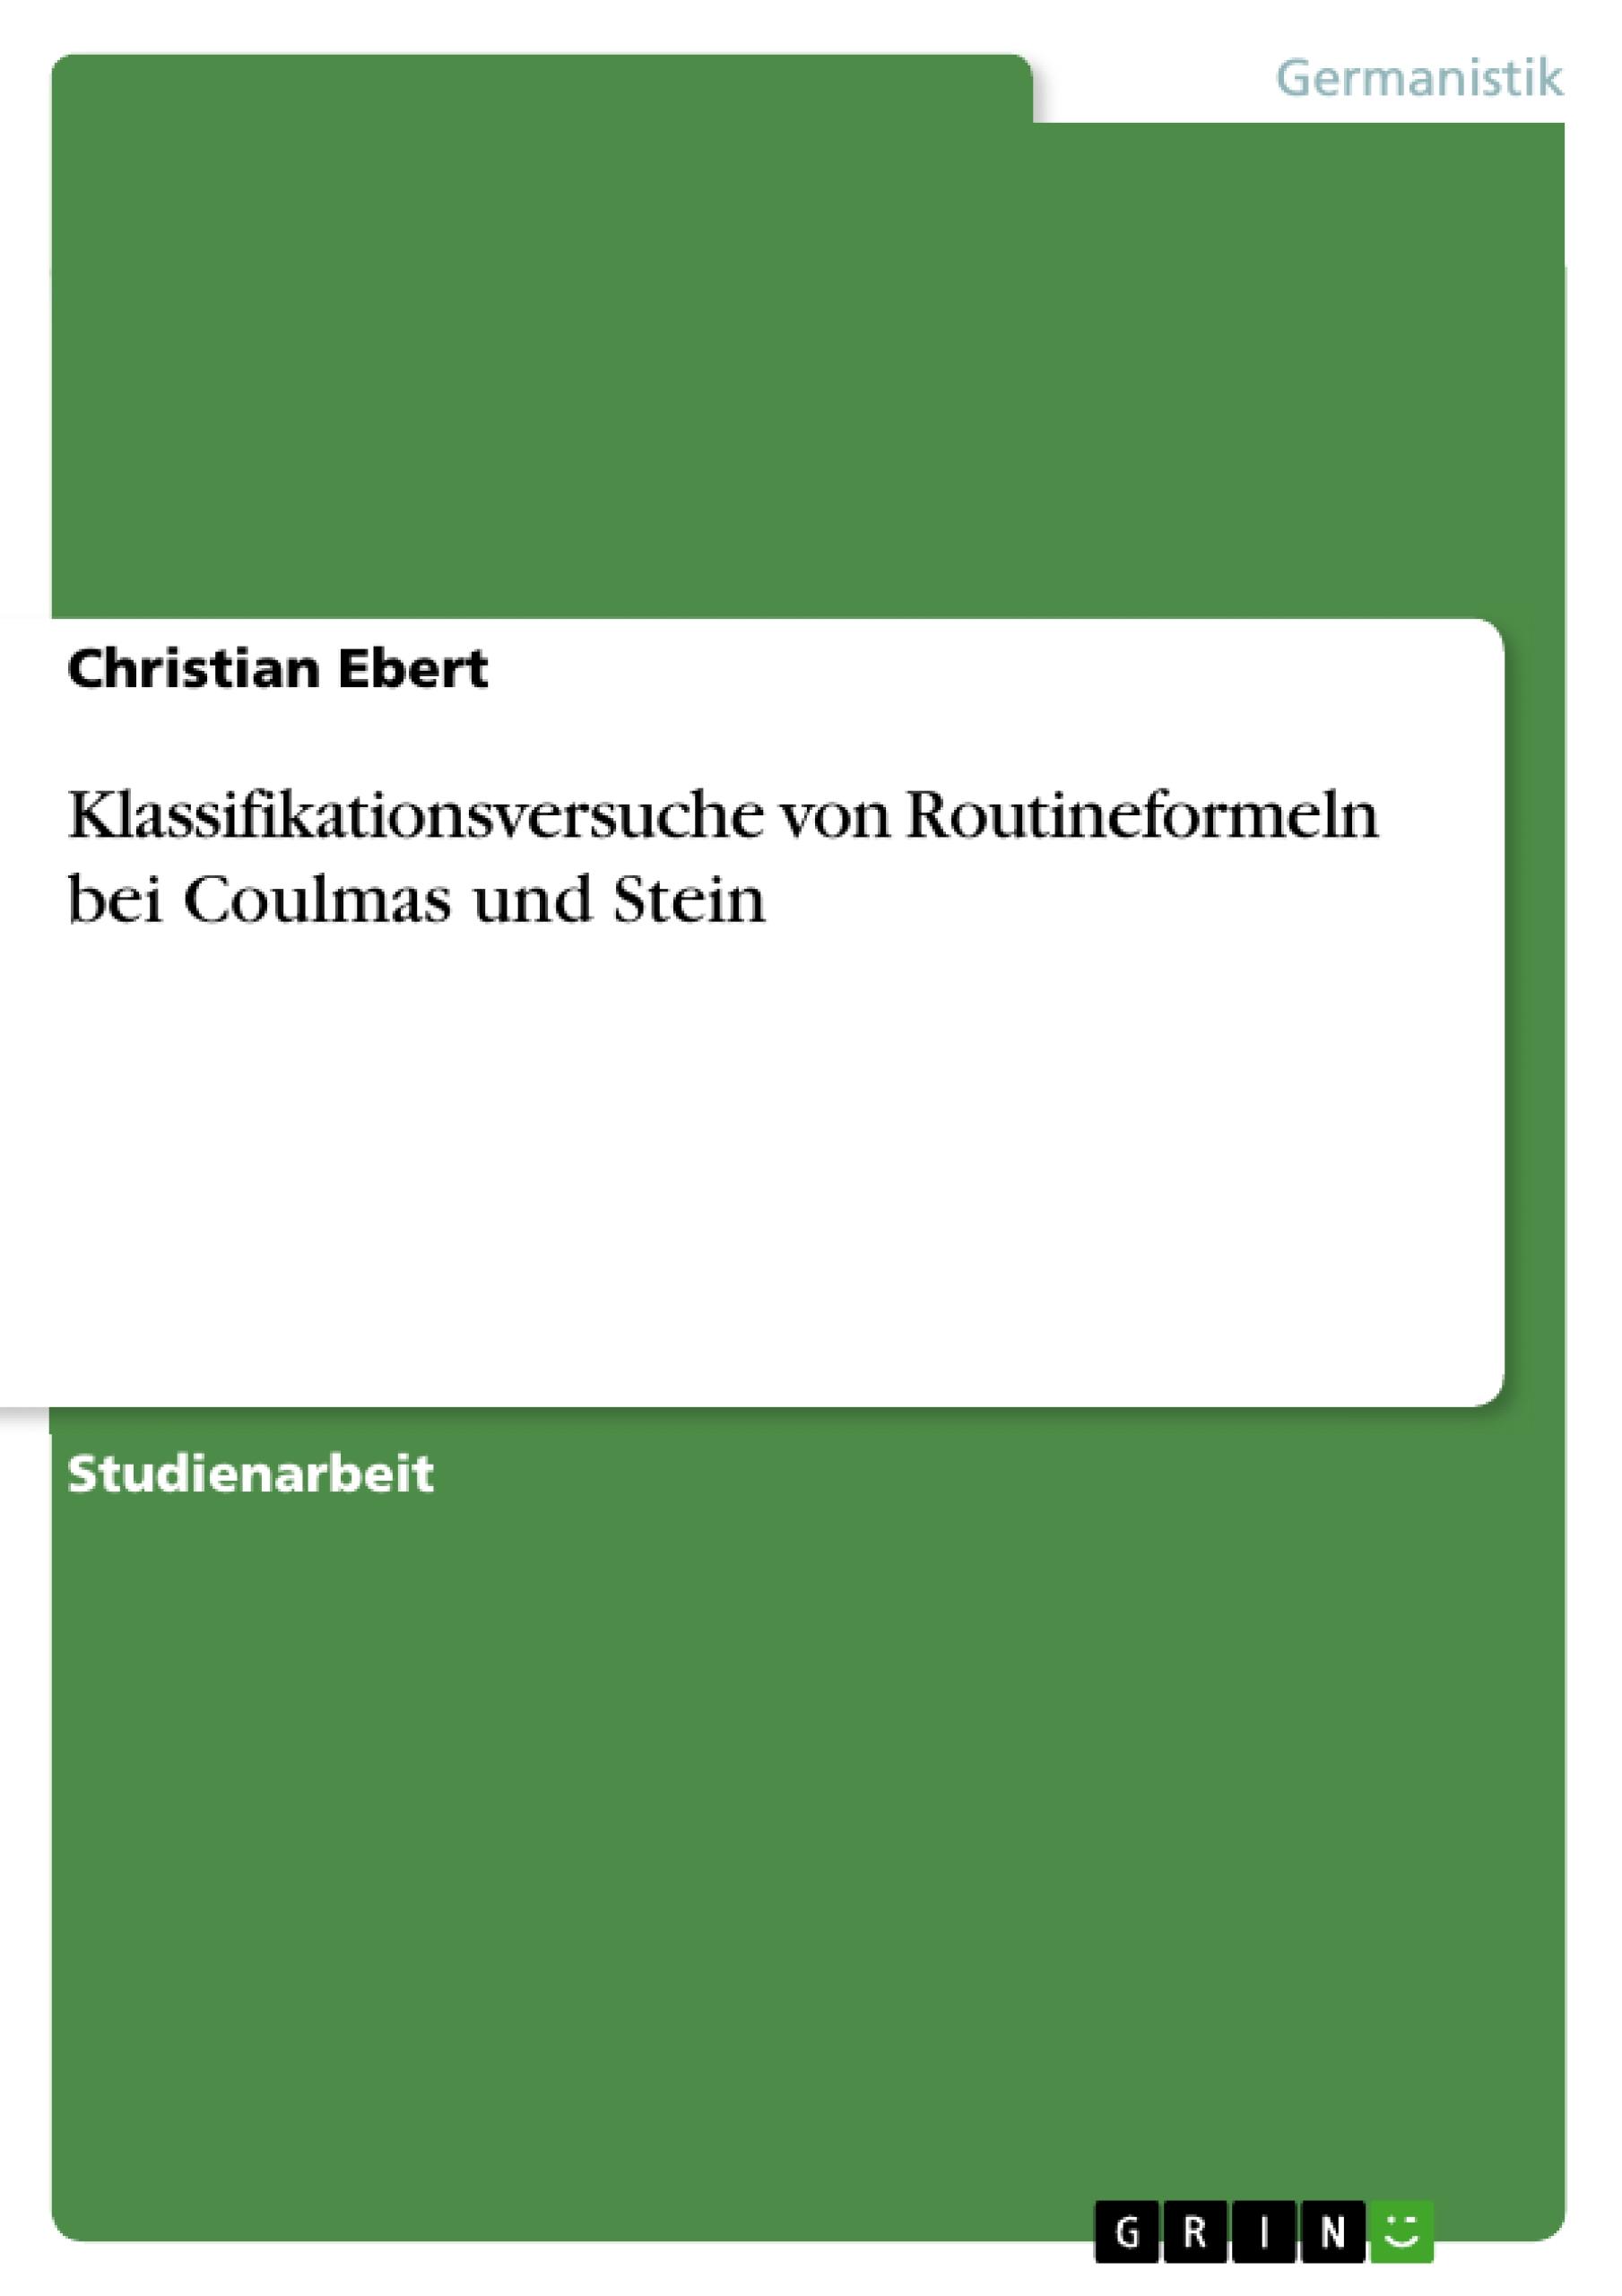 Klassifikationsversuche von Routineformeln bei Coulmas und Stein - Ebert, Christian